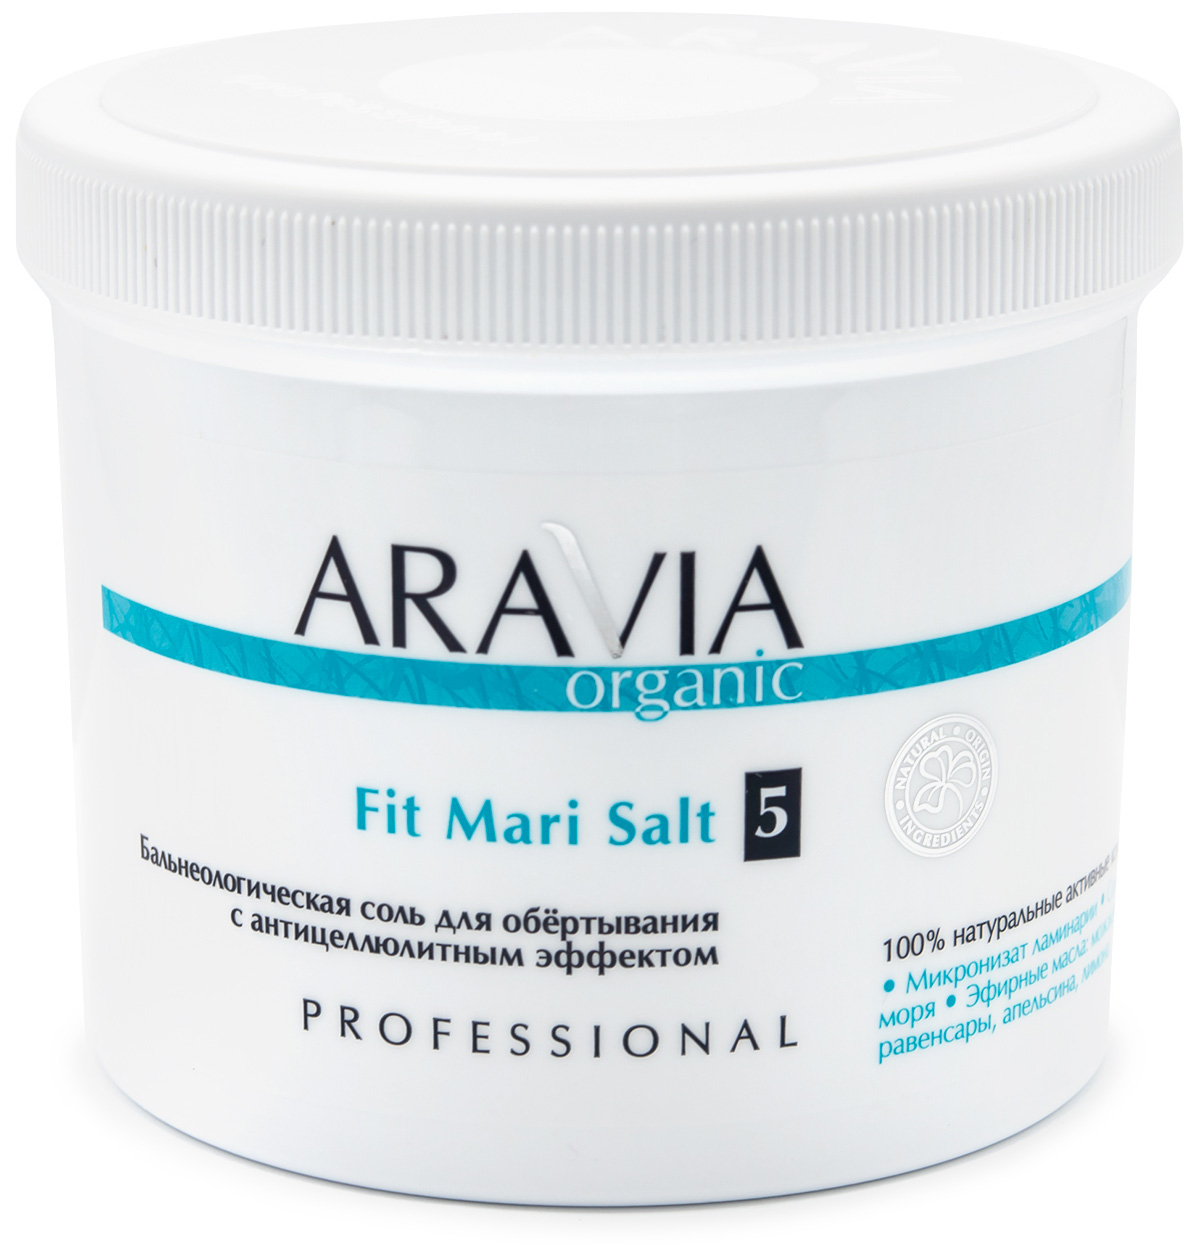 Aravia Professional Бальнеологическая соль для обёртывания с